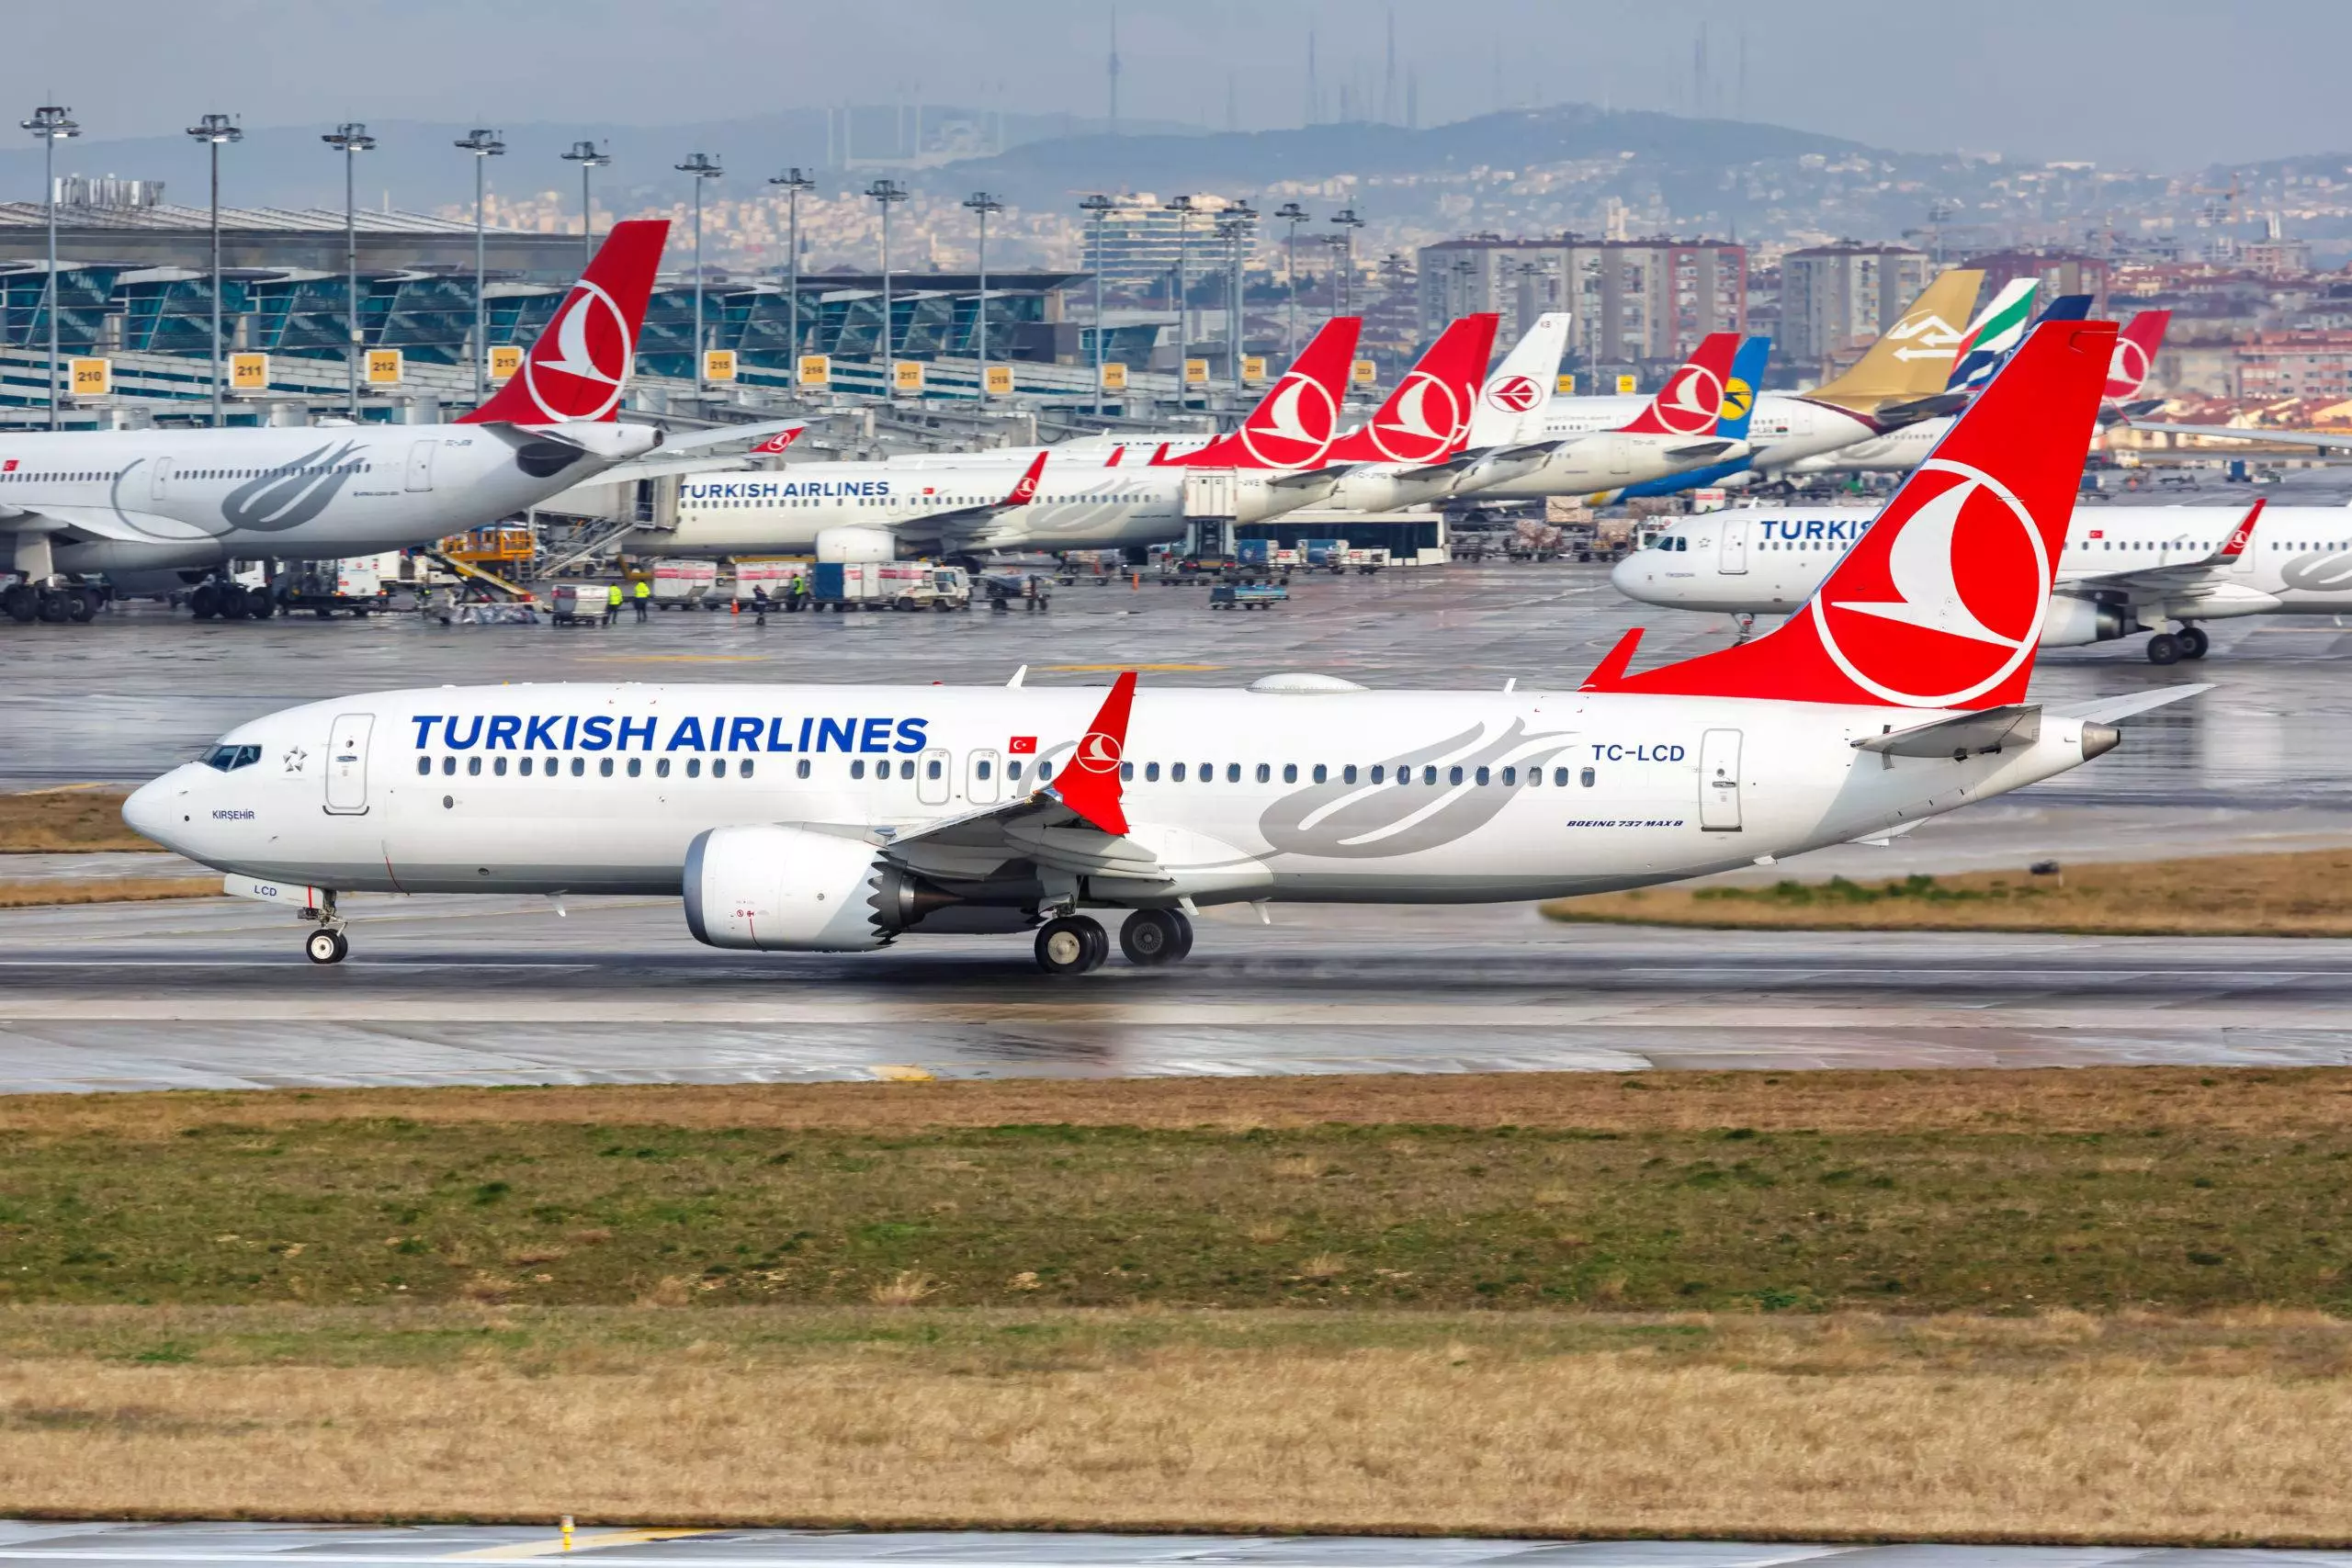 Представительство турецких авиалиний в москве: телефон горячей линии, официальный сайт turkish airlines